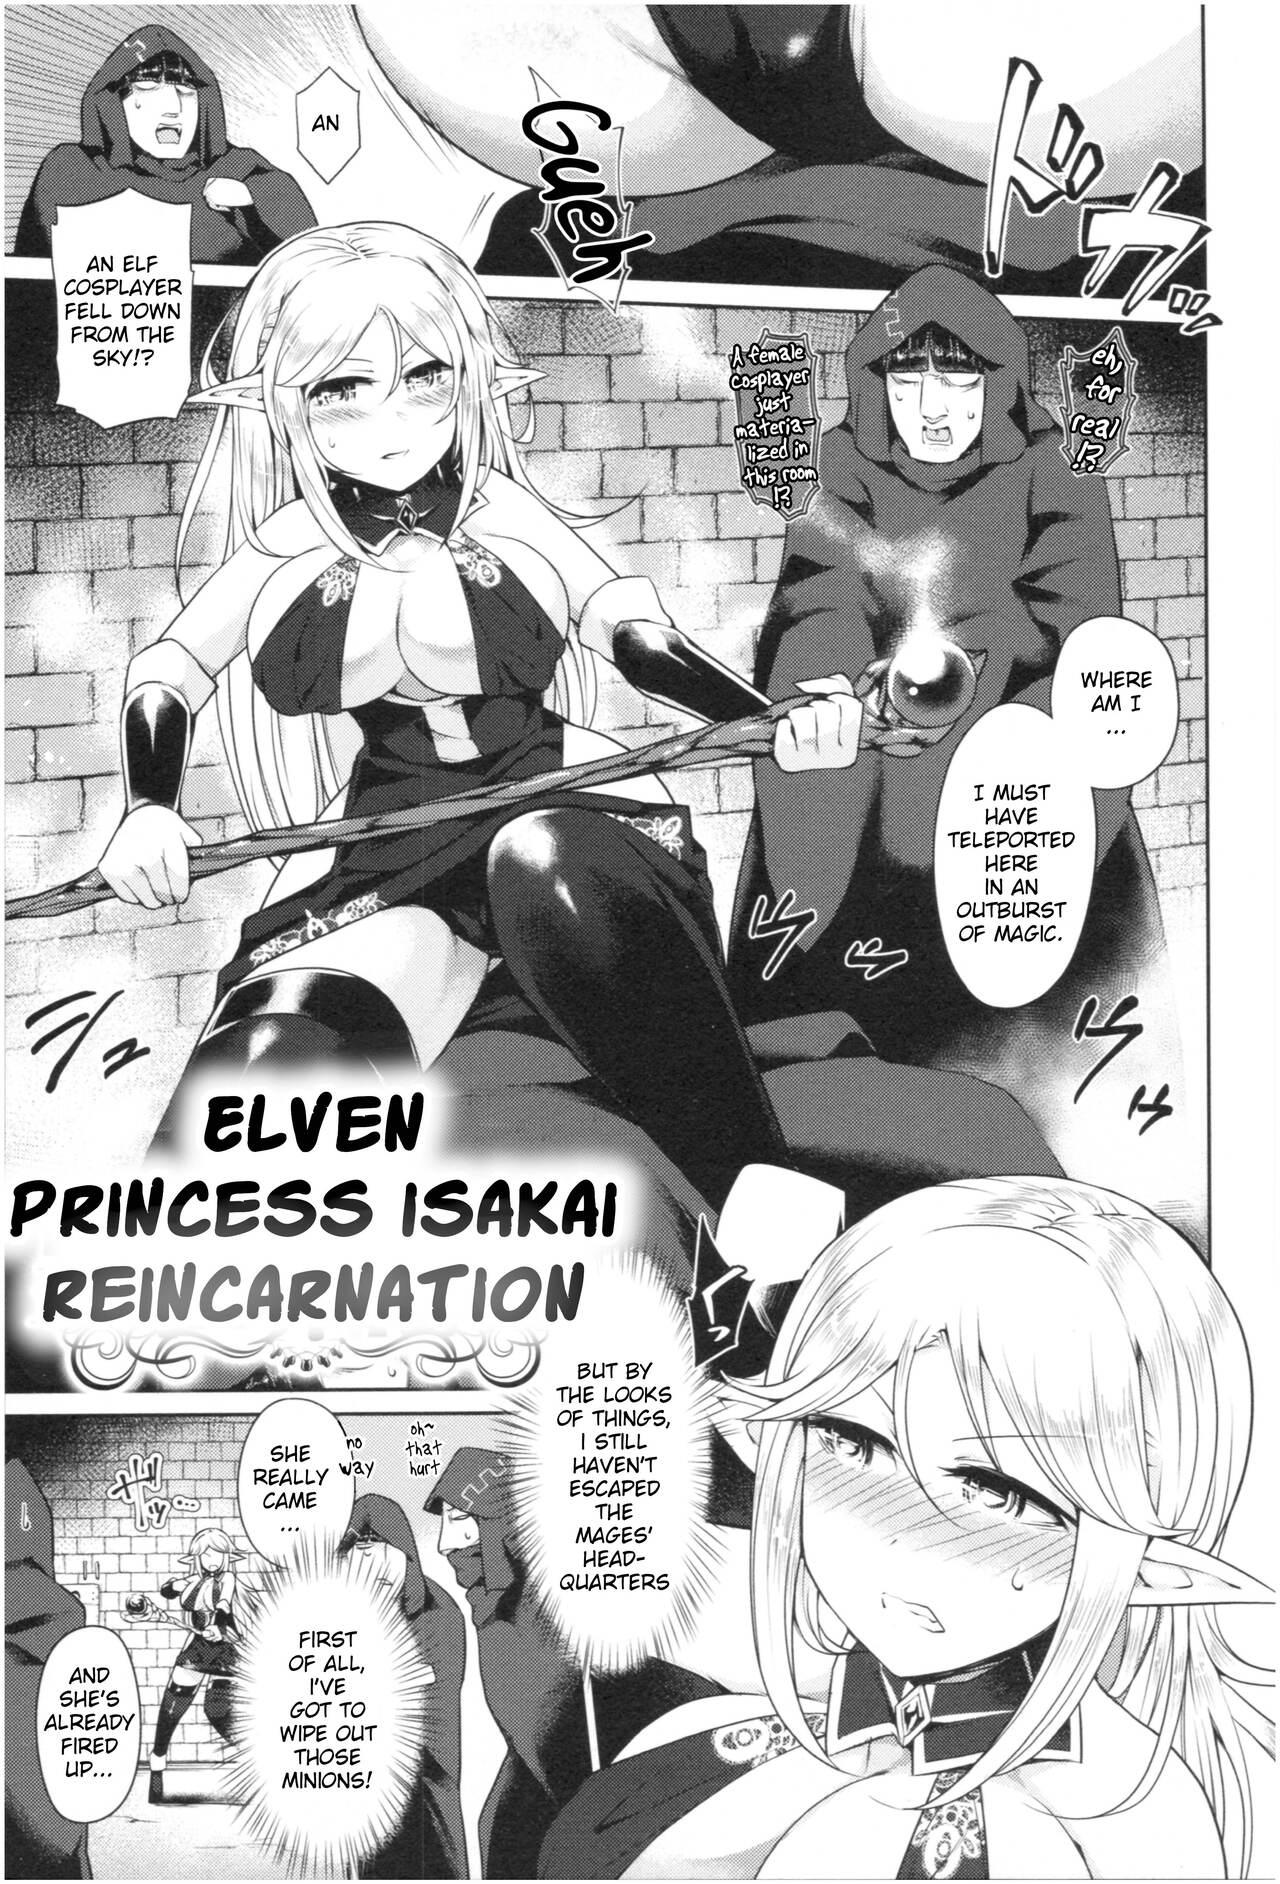 Bisex Elven Princess Isekai Reincarnation Gorda - Page 4